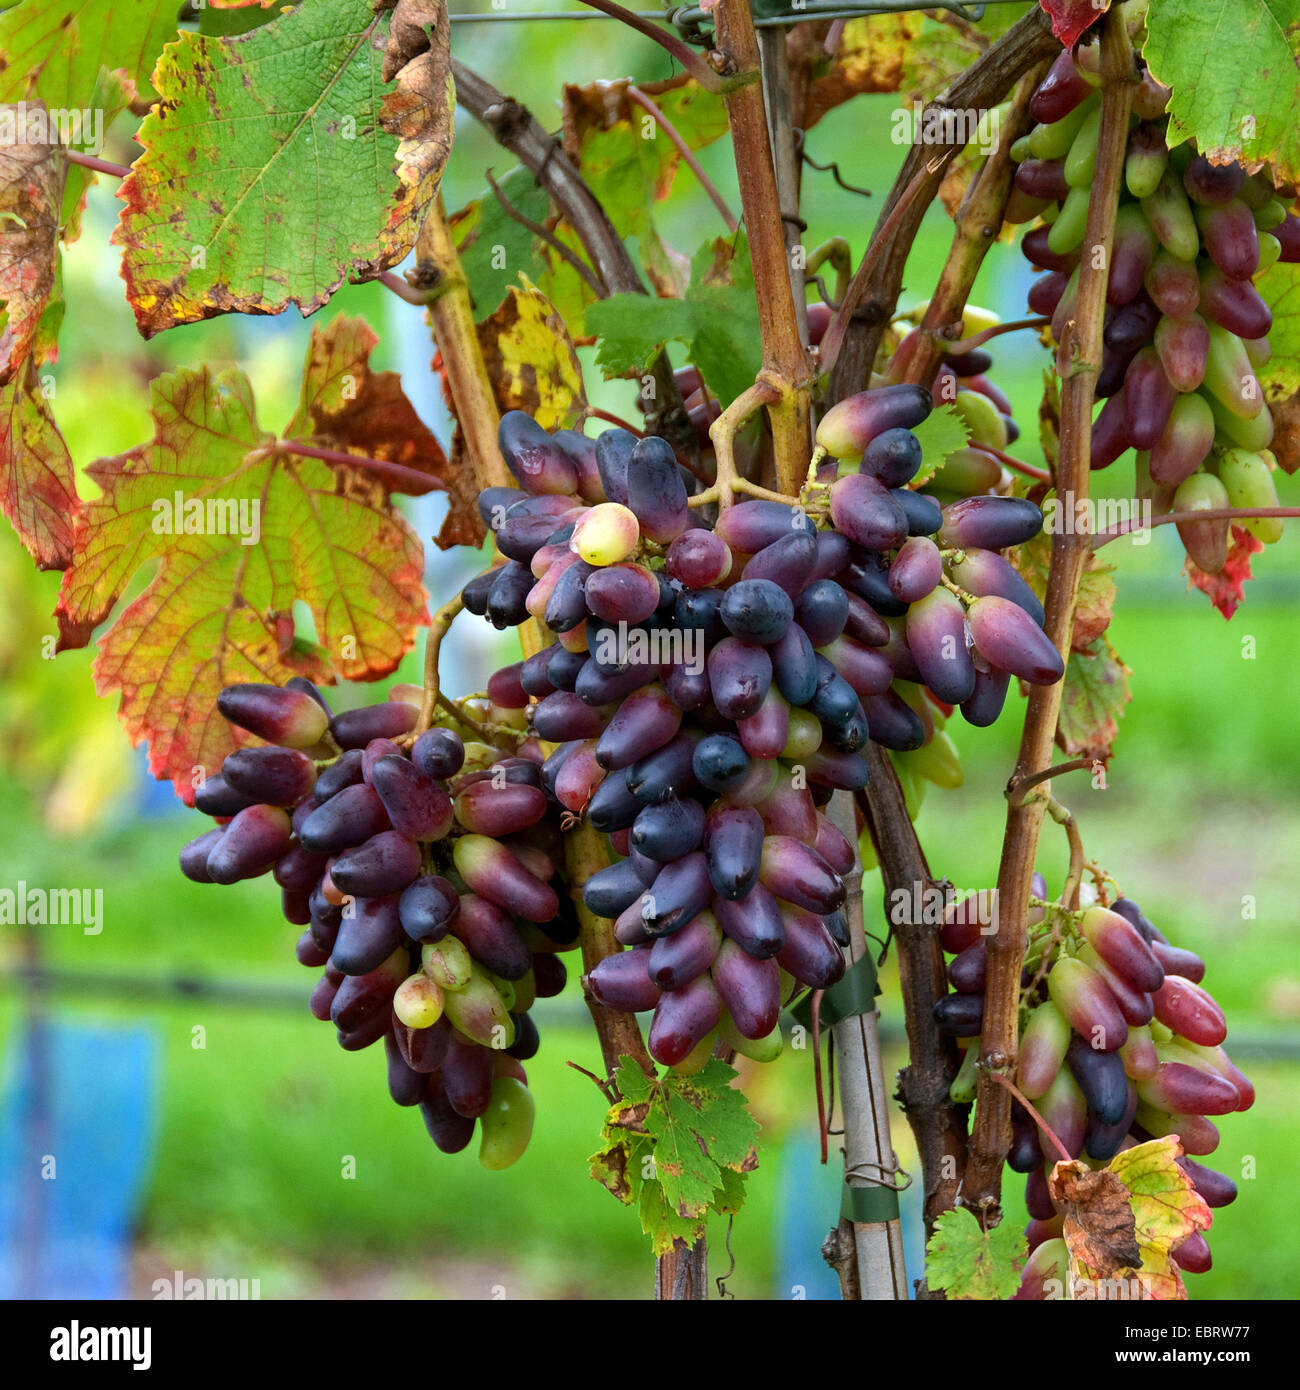 grape-vine, vine (Vitis vinifera 'Souvenier', Vitis vinifera Souvenier), cultivar Souvenier Stock Photo